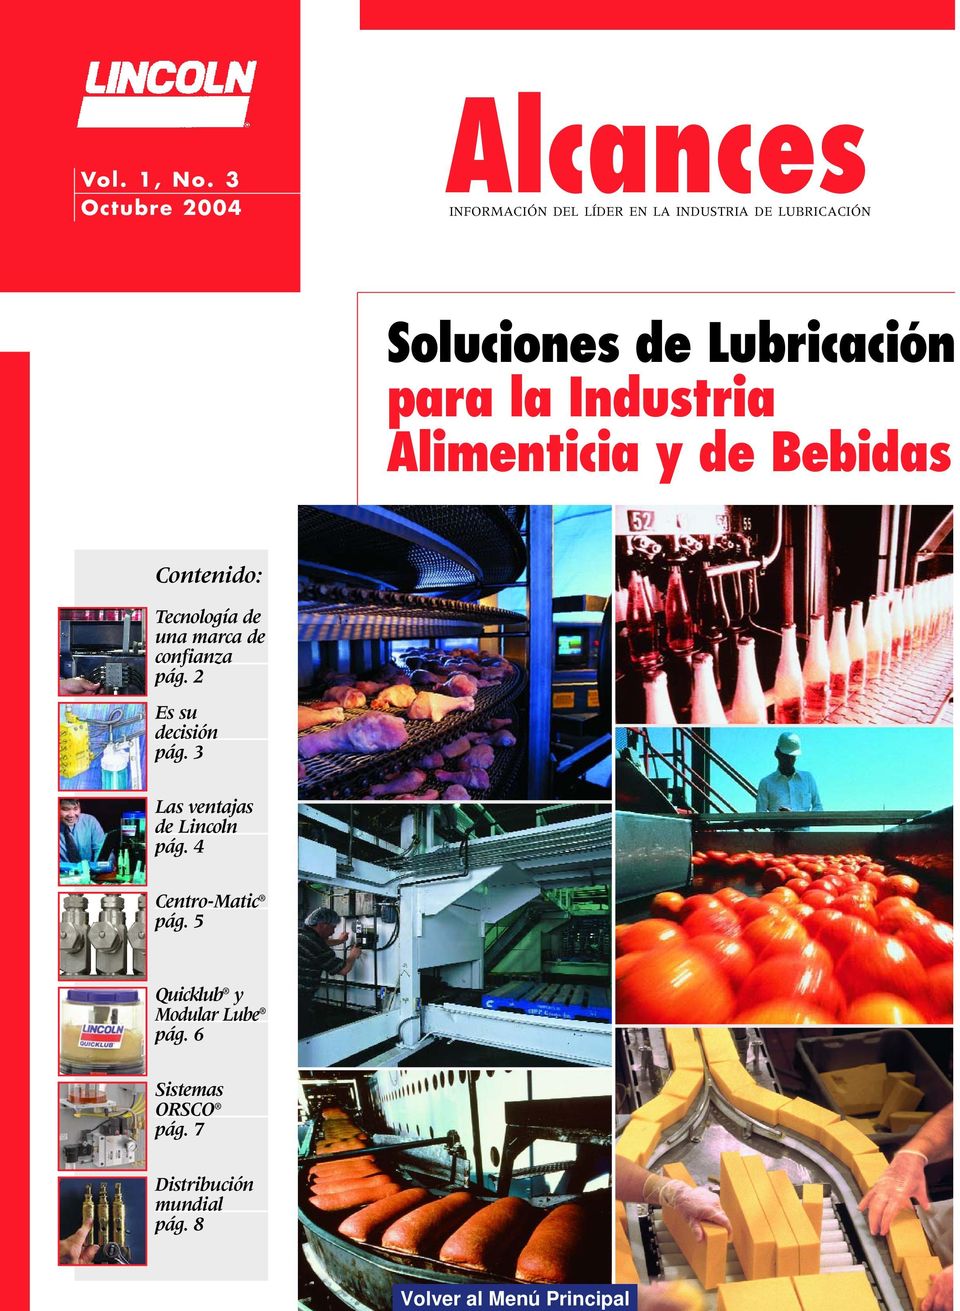 Industria Alimenticia y de Bebidas Contenido: Tecnología de una Pumps marca de confianza page 5 pág.